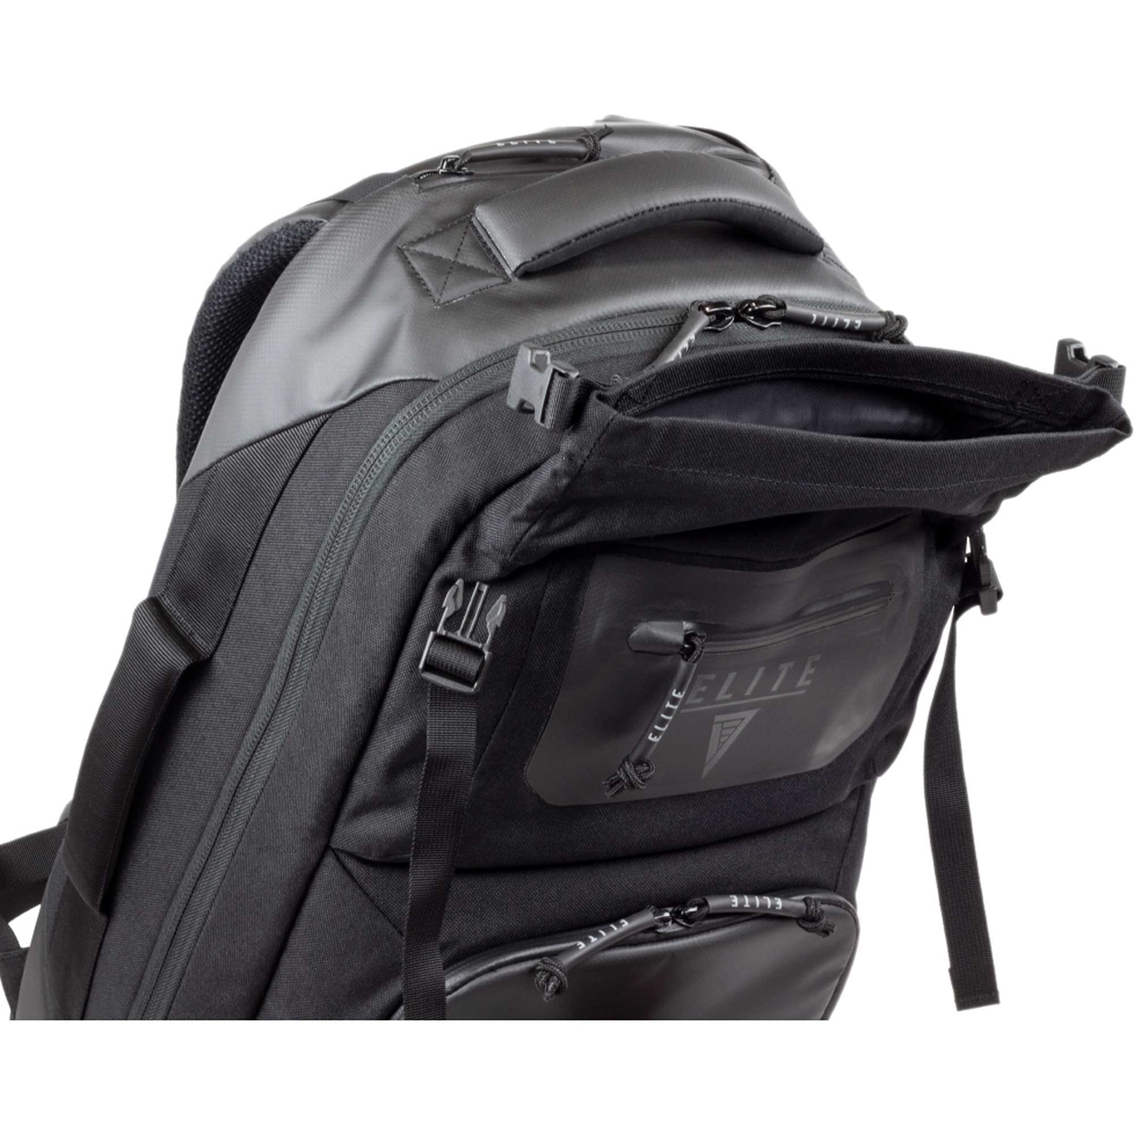 Elite Survival Stealth SBR Backpack - Image 4 of 5